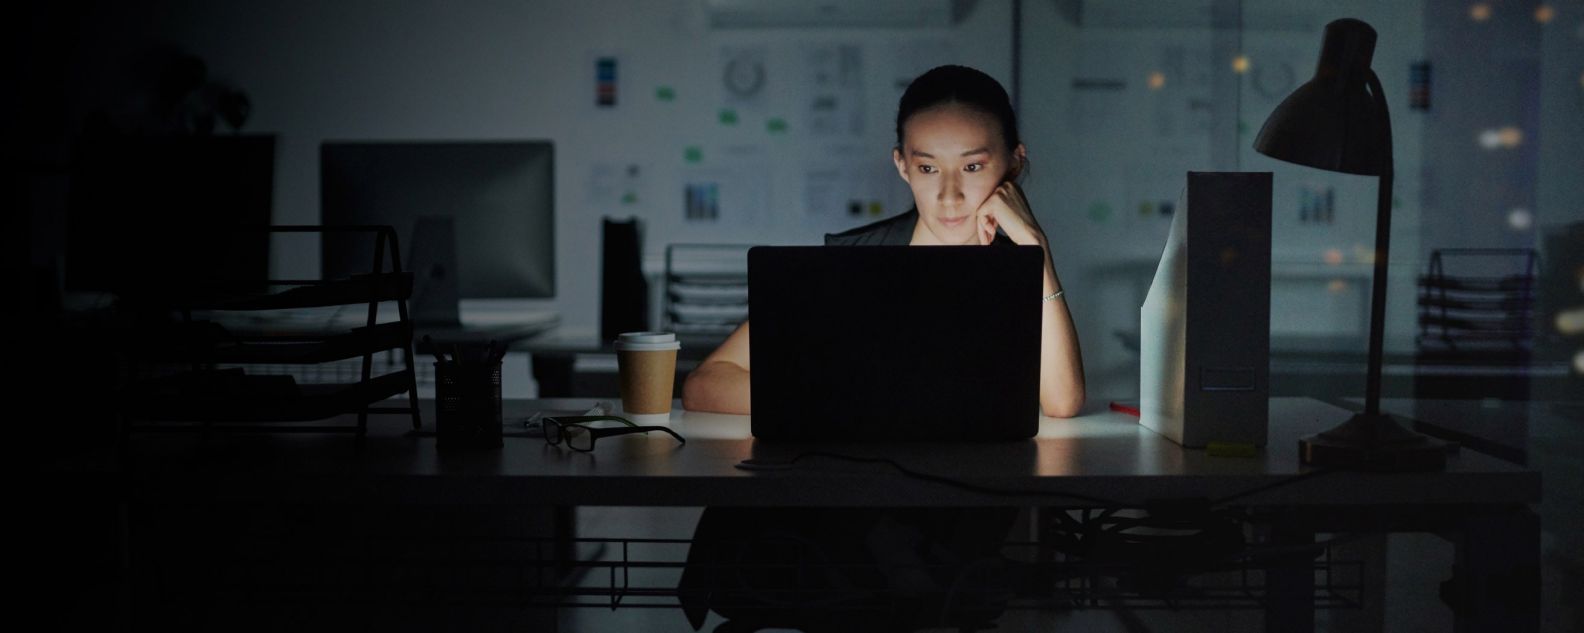 Mujer trabaja concentrada con su computadora portátil en un cuarto oscuro